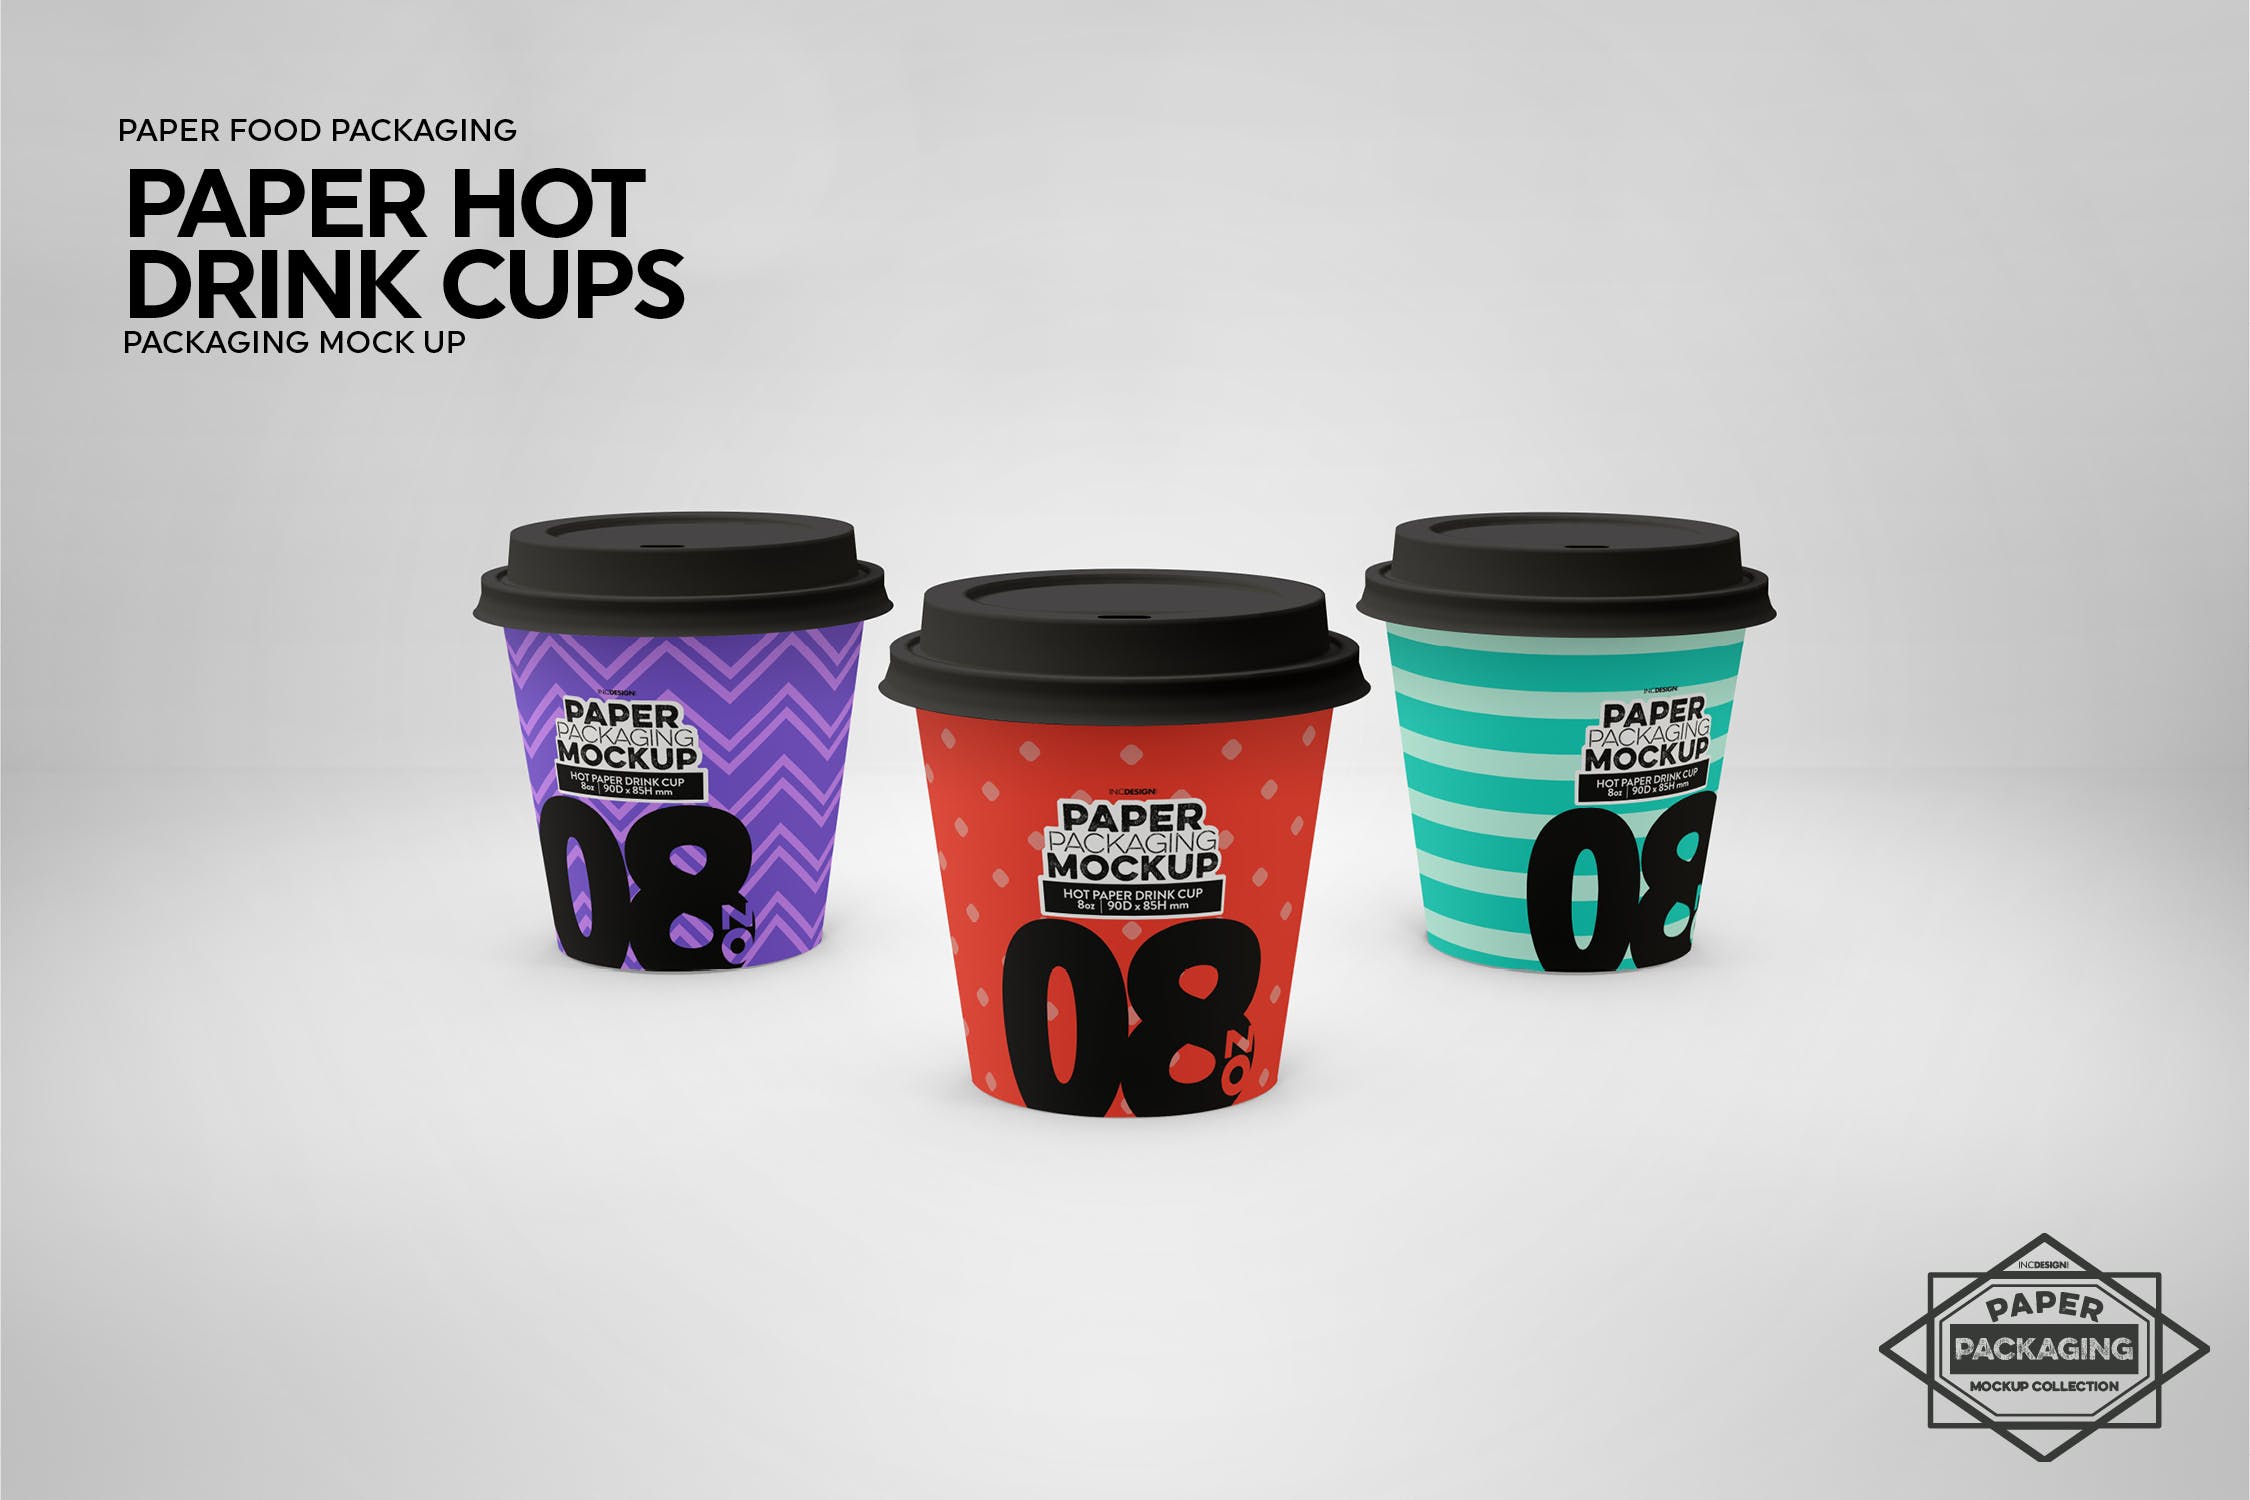 热饮一次性纸杯外观设计素材库精选 Paper Hot Drink Cups Packaging Mockup插图(14)